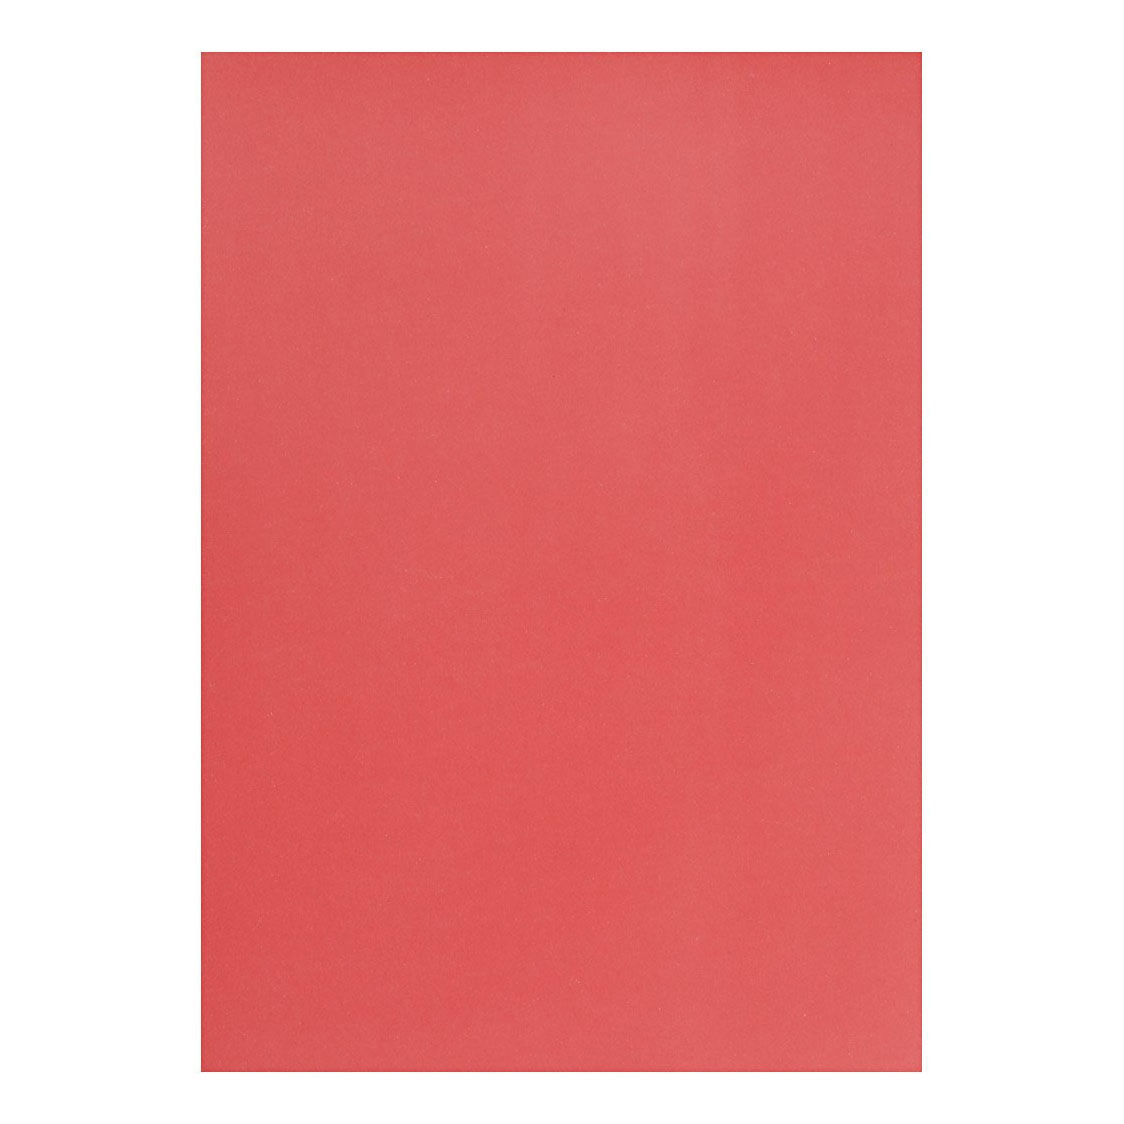 Pergamentpapier A4 Rot, 10 Blatt